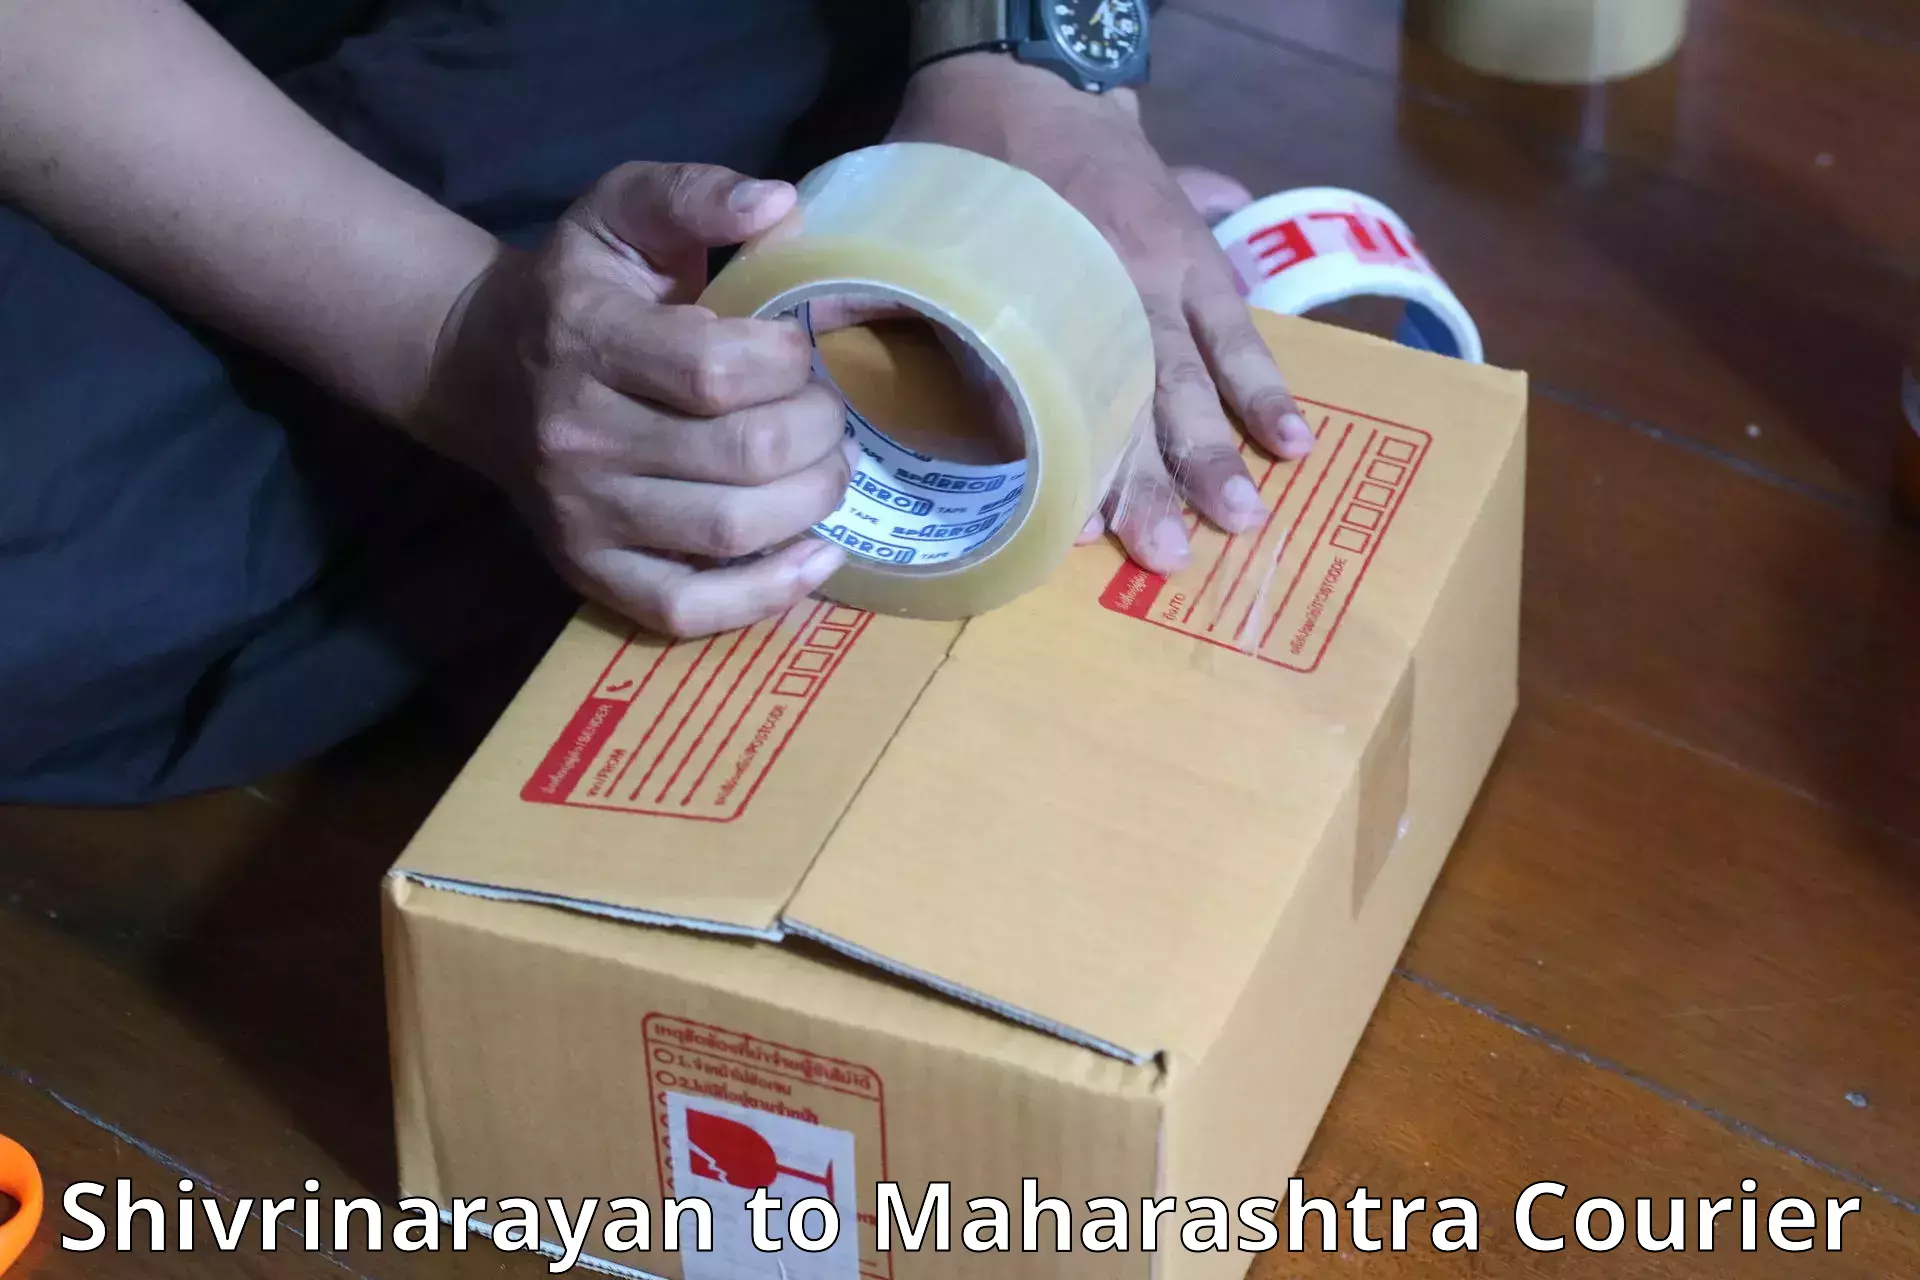 Baggage delivery planning Shivrinarayan to Maharashtra